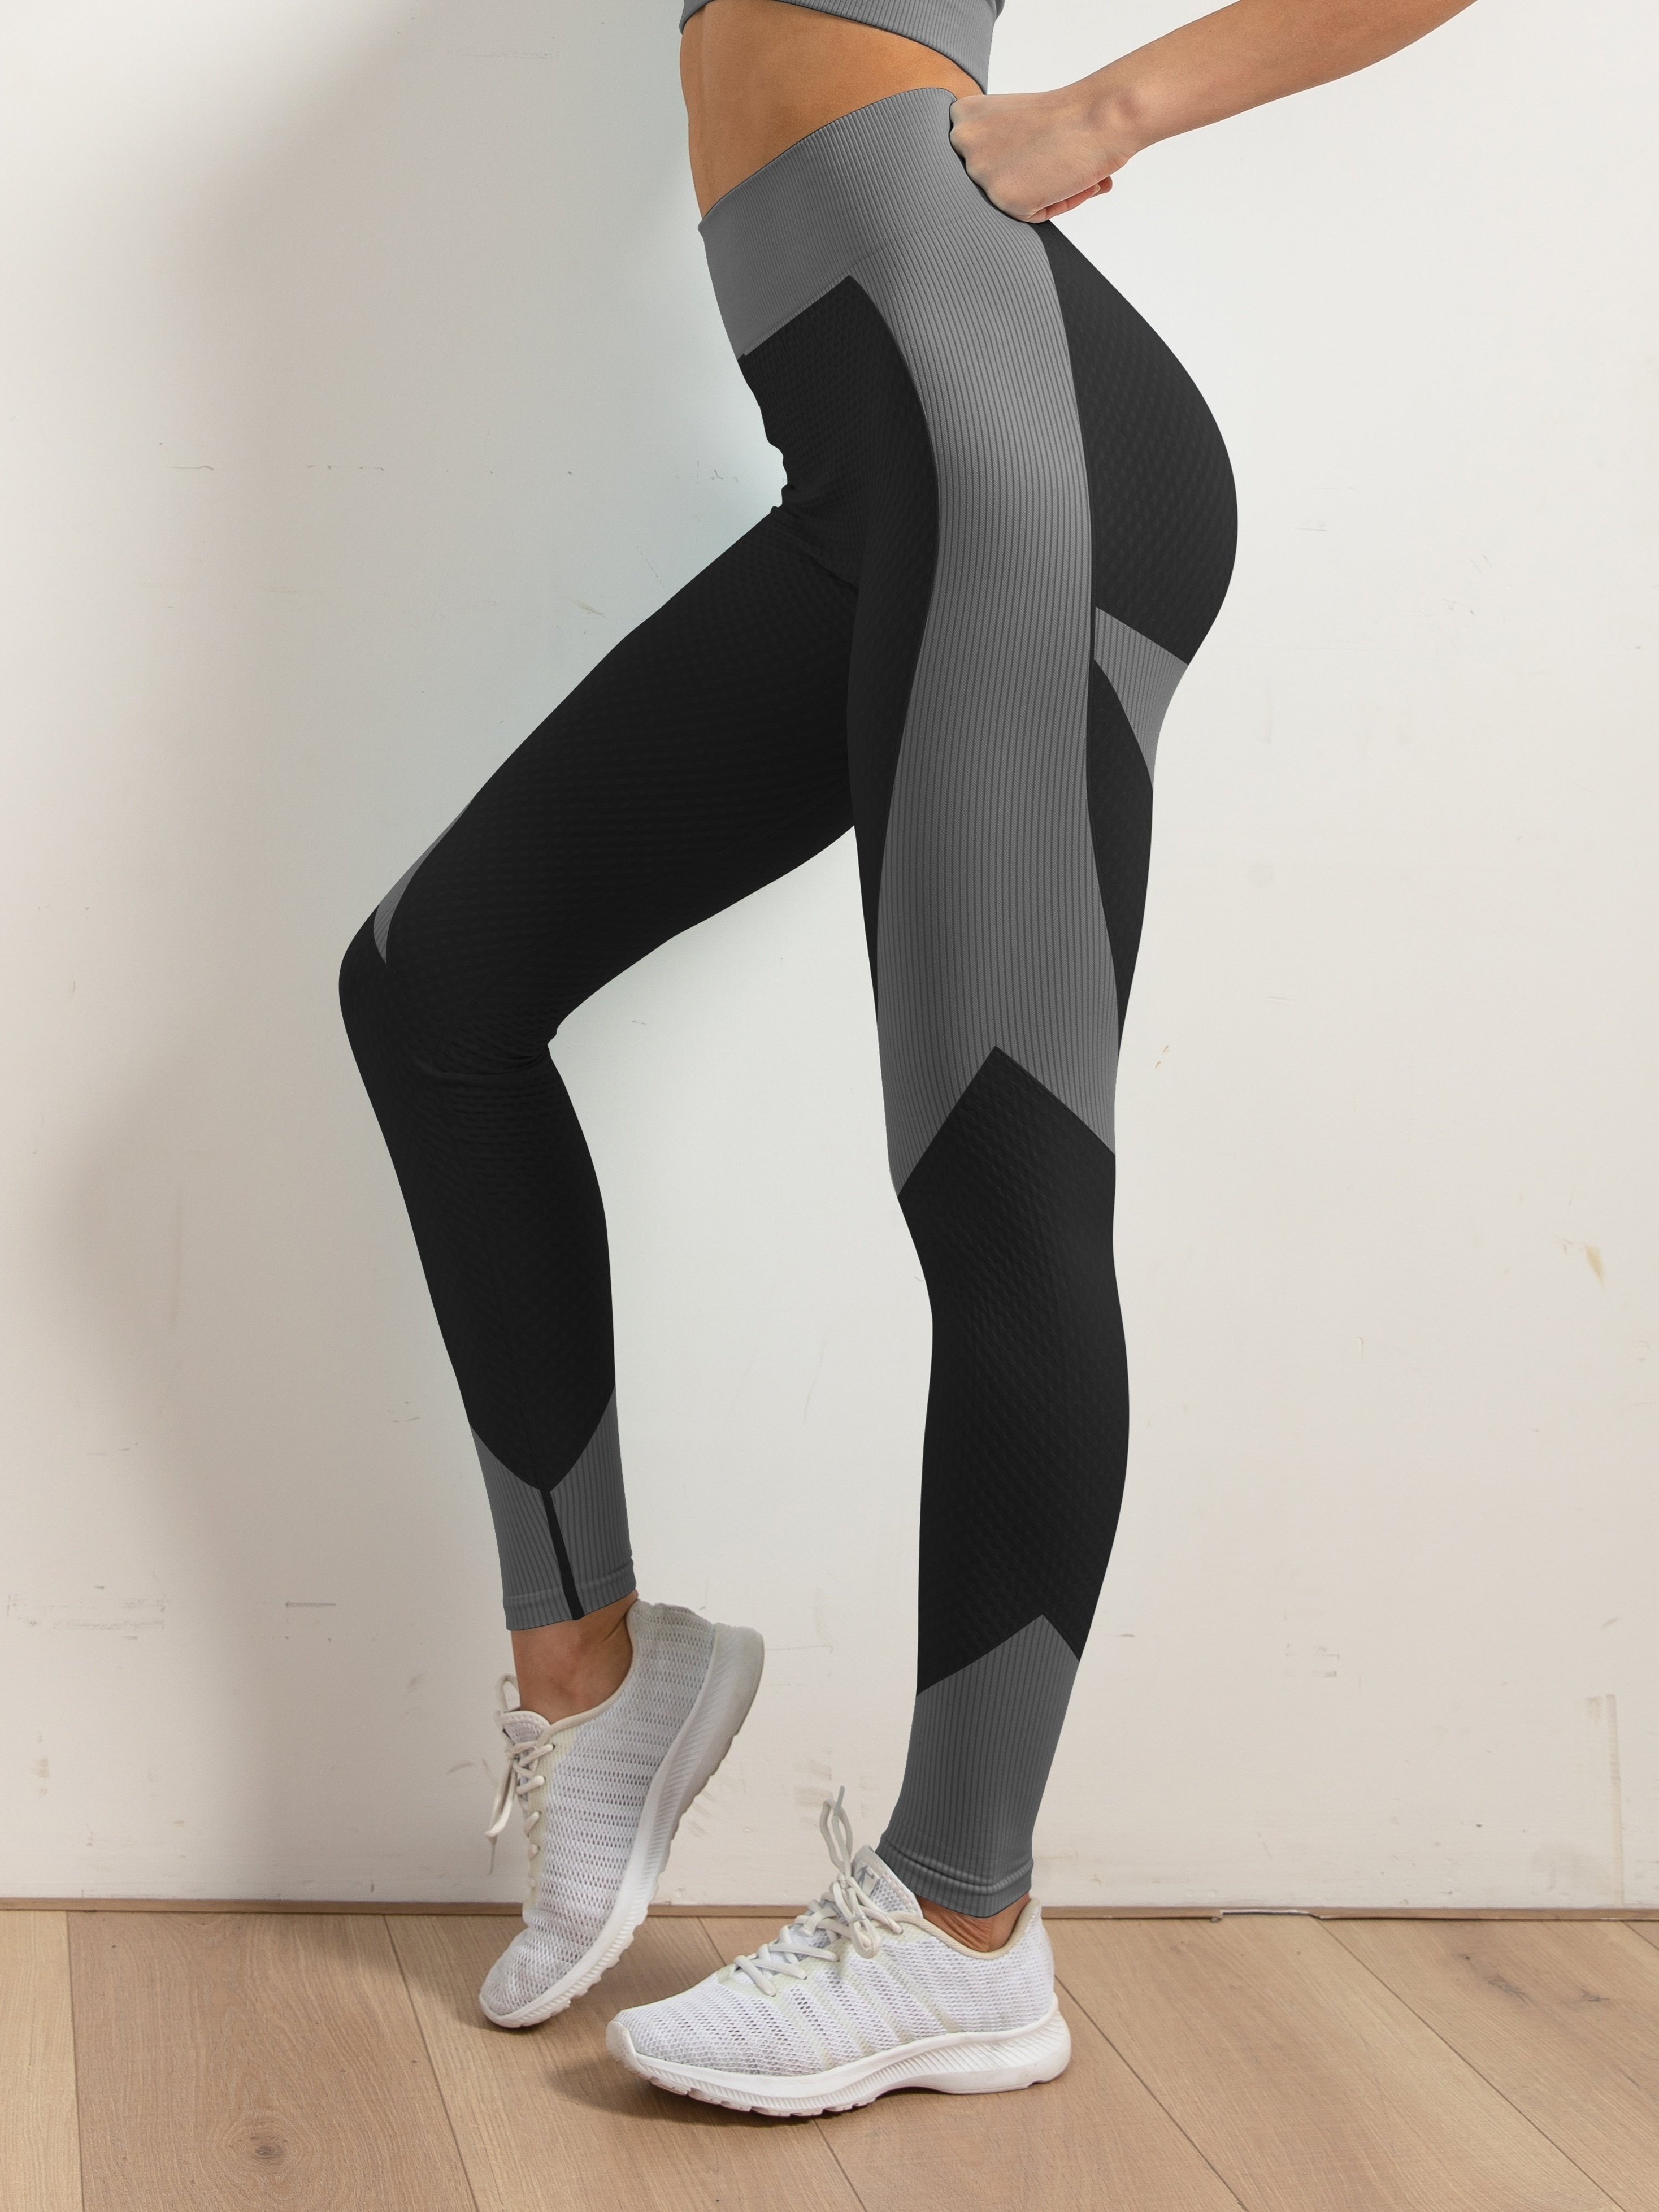 Avia Black And Gray Gym Legging Yoga Pants  Grey gym leggings, Gym leggings,  Yoga pants shop